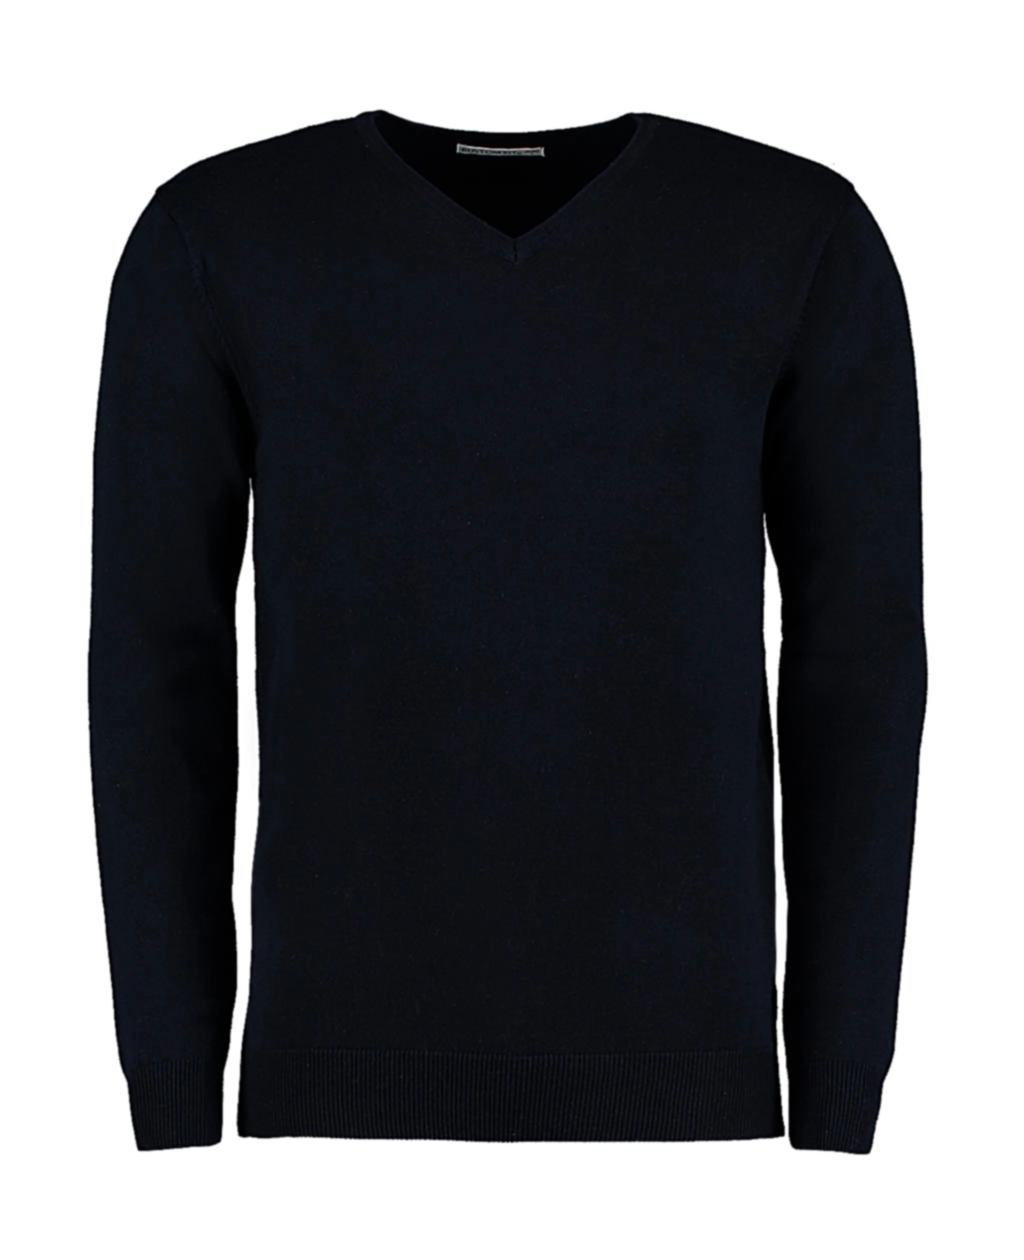 Classic Fit Arundel V Neck Sweater zum Besticken und Bedrucken in der Farbe Navy mit Ihren Logo, Schriftzug oder Motiv.